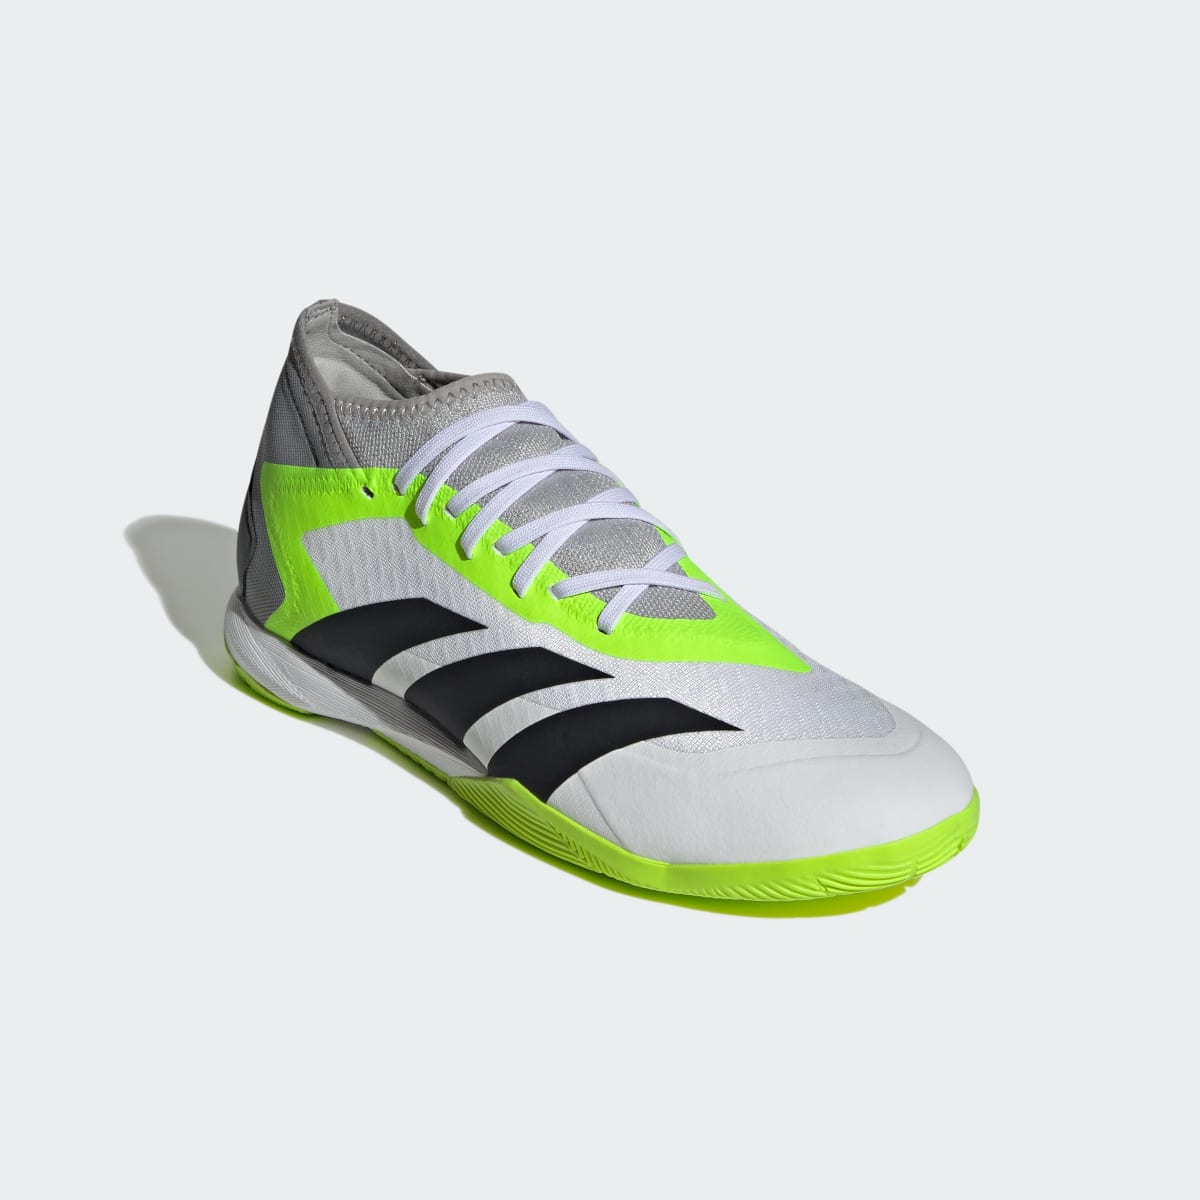 Adidas Predator Accuracy.3 Indoor Soccer Shoes. 5